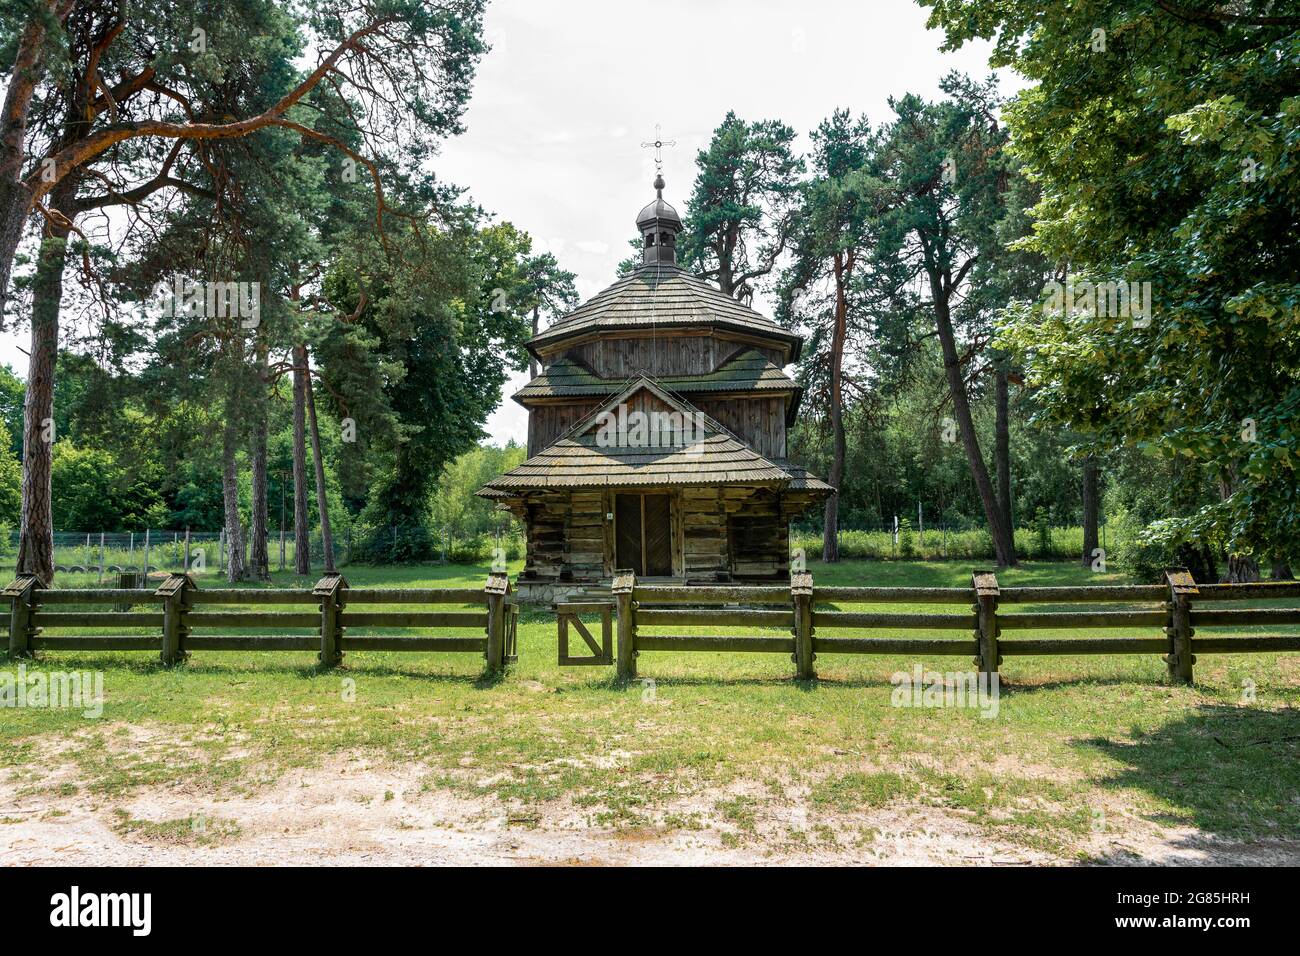 Chiesa di San Bazyli in legno greco-cattolica a Belzec, costruita nel 1756, situata su un ex cimitero, circondato da alberi antichi. Belzec, Roztocze, Polonia Foto Stock